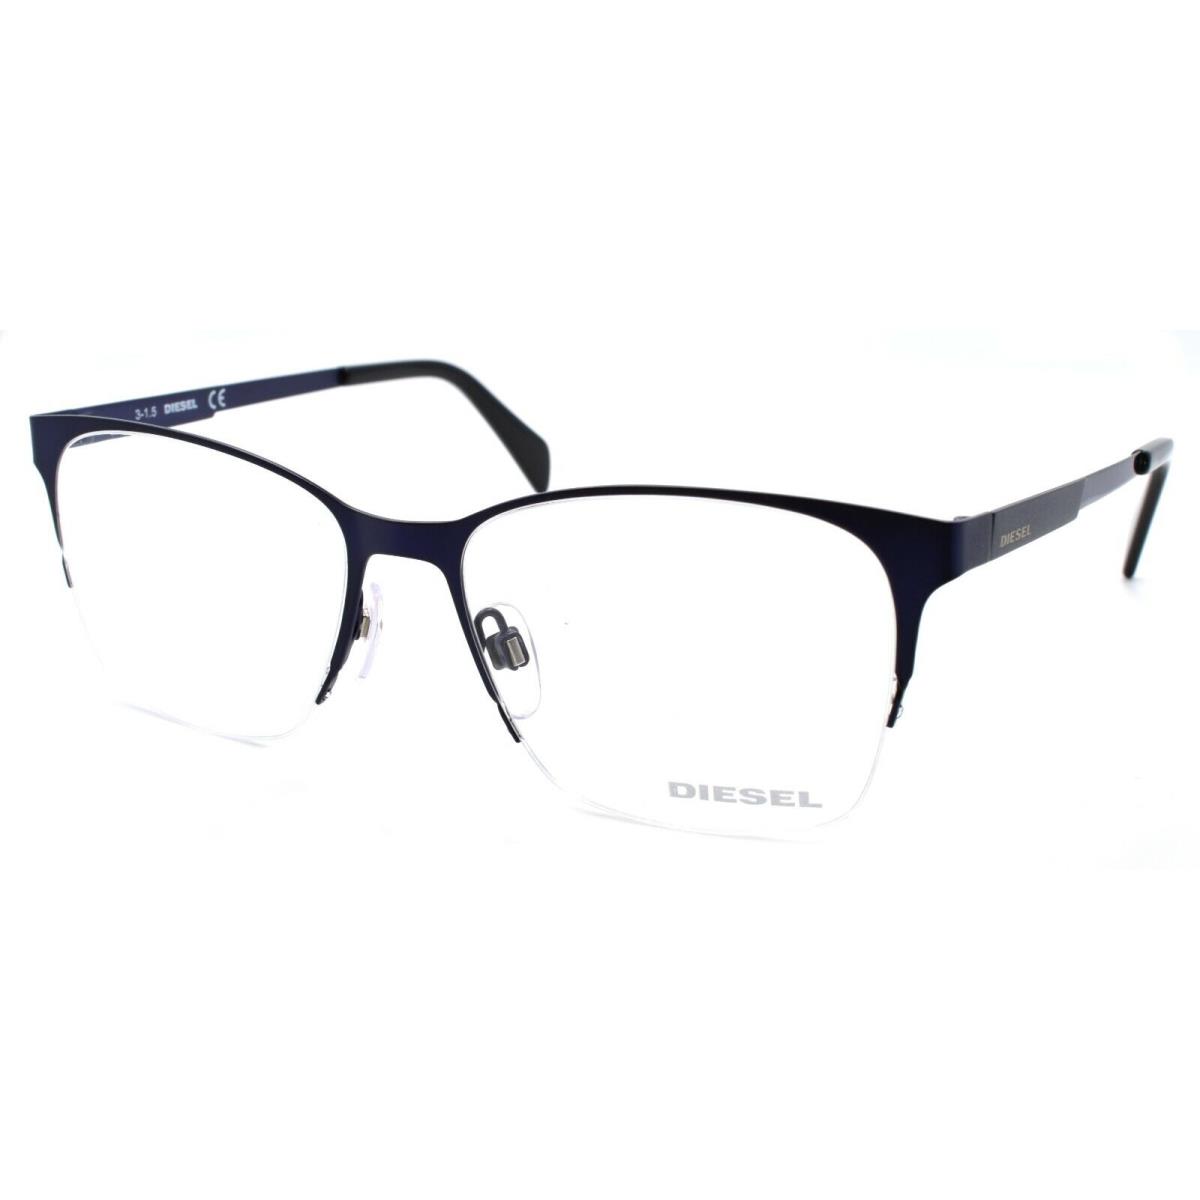 Diesel DL5152 092 Unisex Eyeglasses Frames Half Rim 52-16-145 Dark Blue